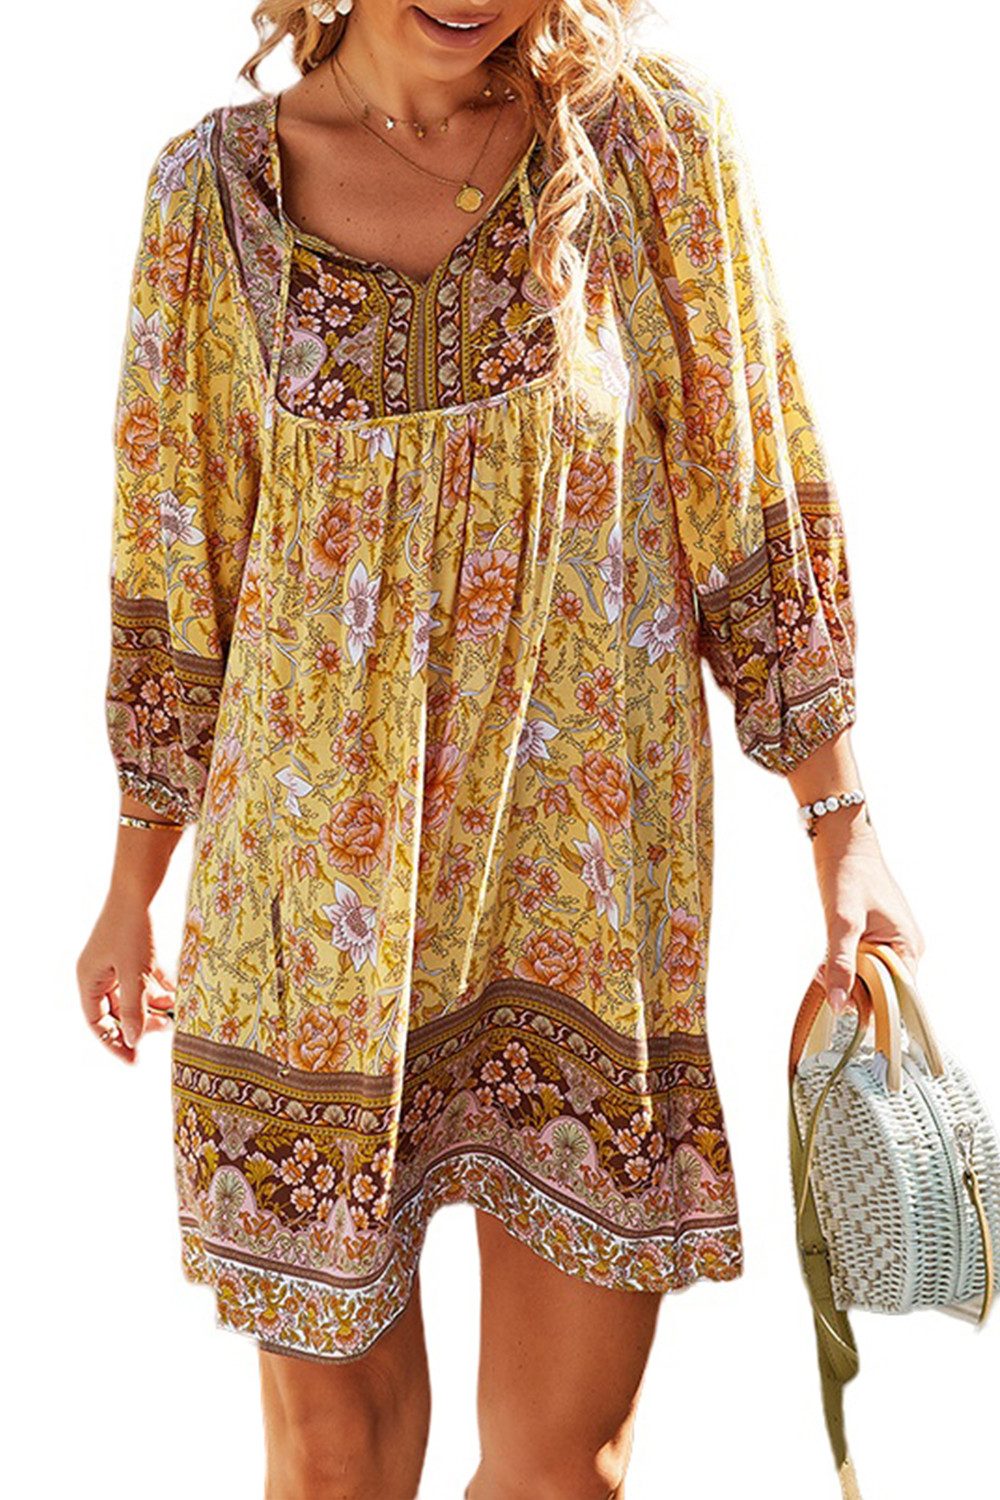 Orient Phoenix Strandkleid Damen Boho-Kleid mit Krawattenhals, Vintage-Minileid, 7/8 Ärmel Sommer Ethno-Stil lässiges bedruckt kurzes Strandkleid